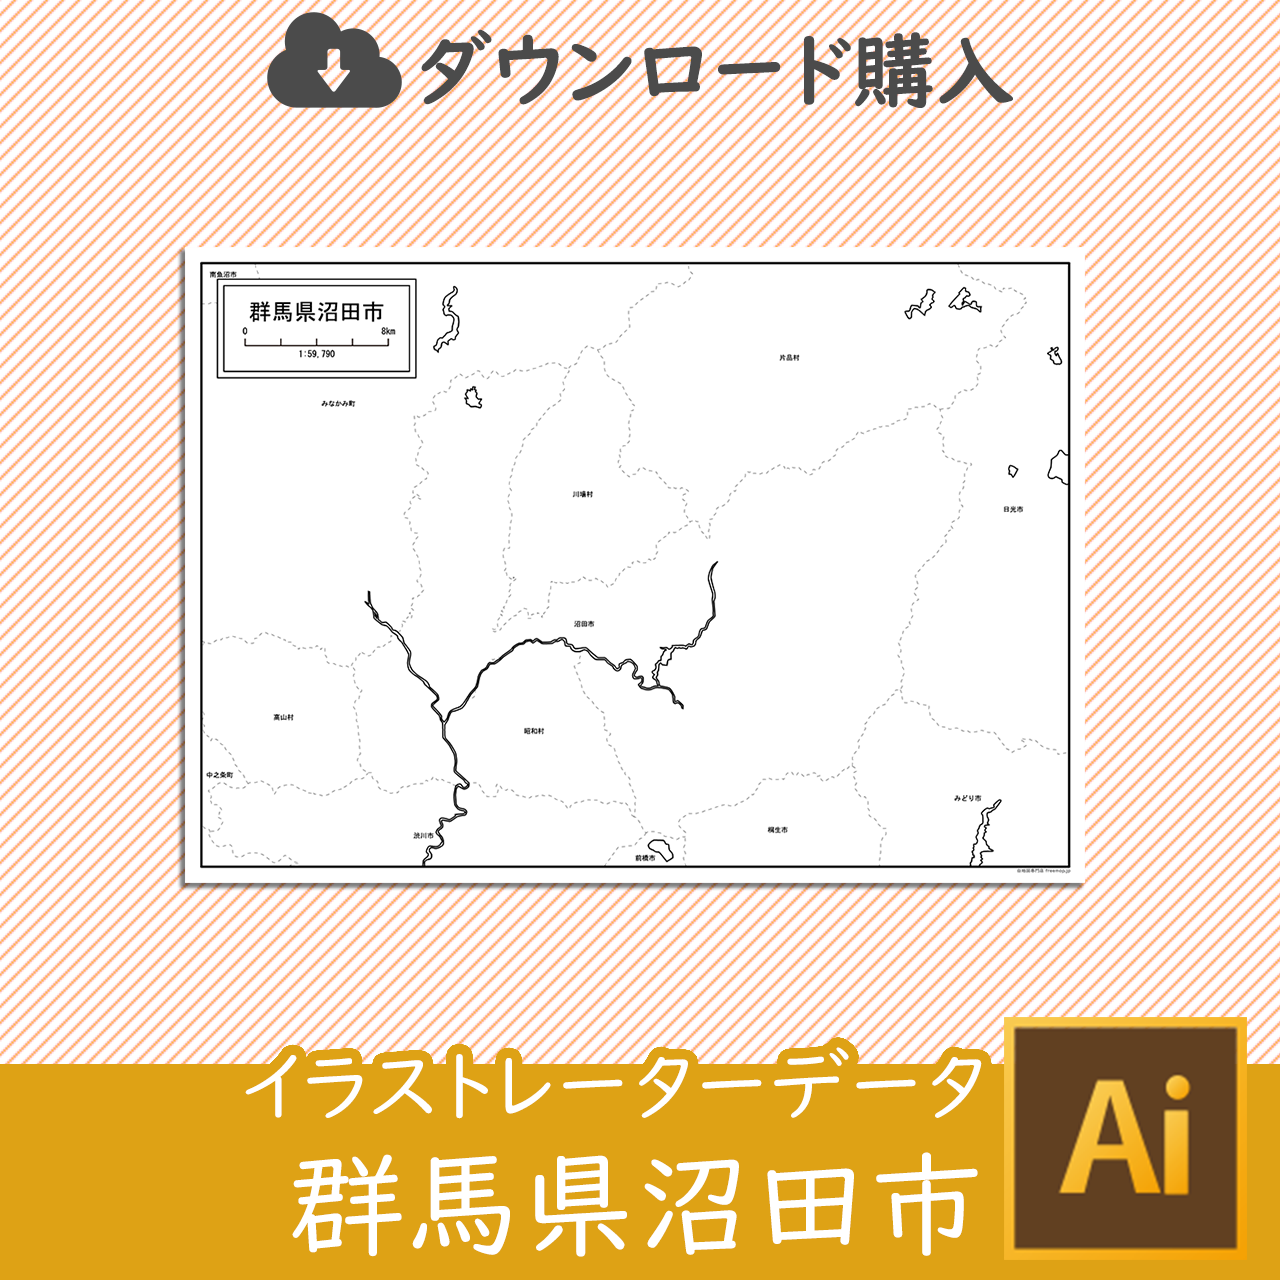 沼田市のaiデータのサムネイル画像